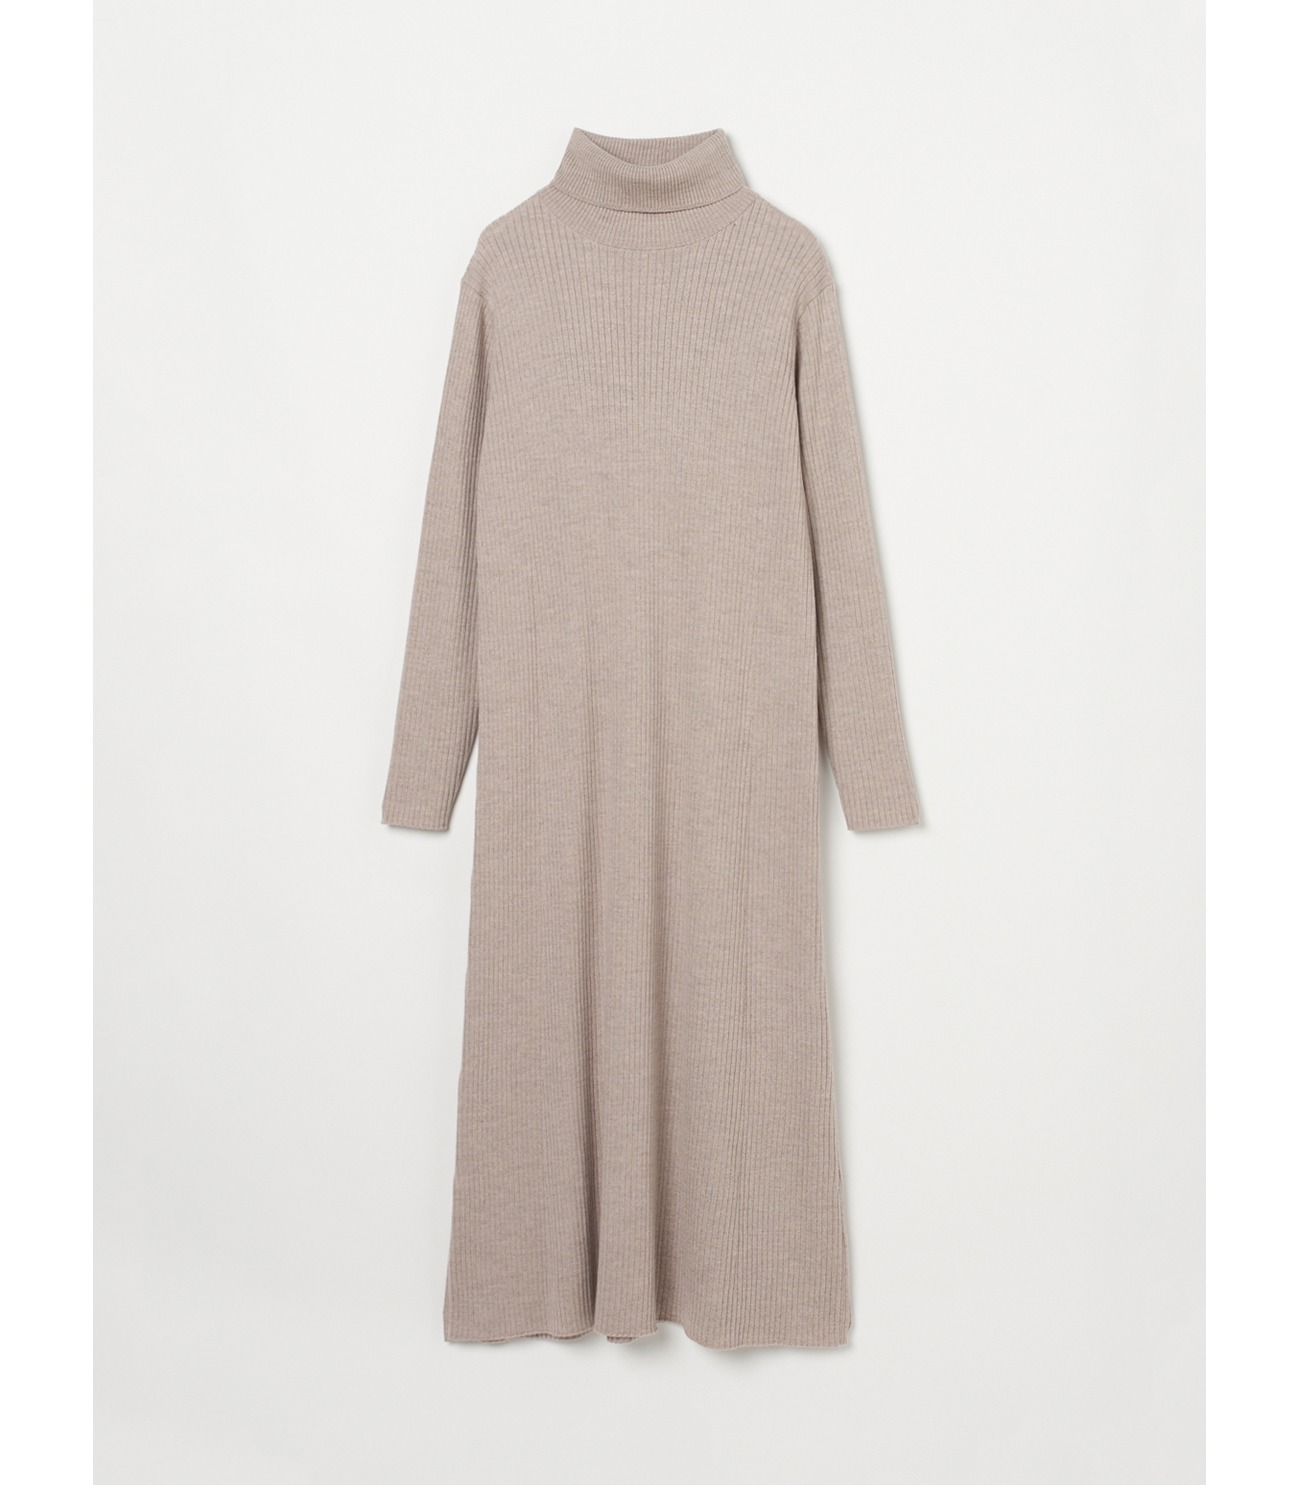 Wool outfit a-line long dress 詳細画像 heather beige 2